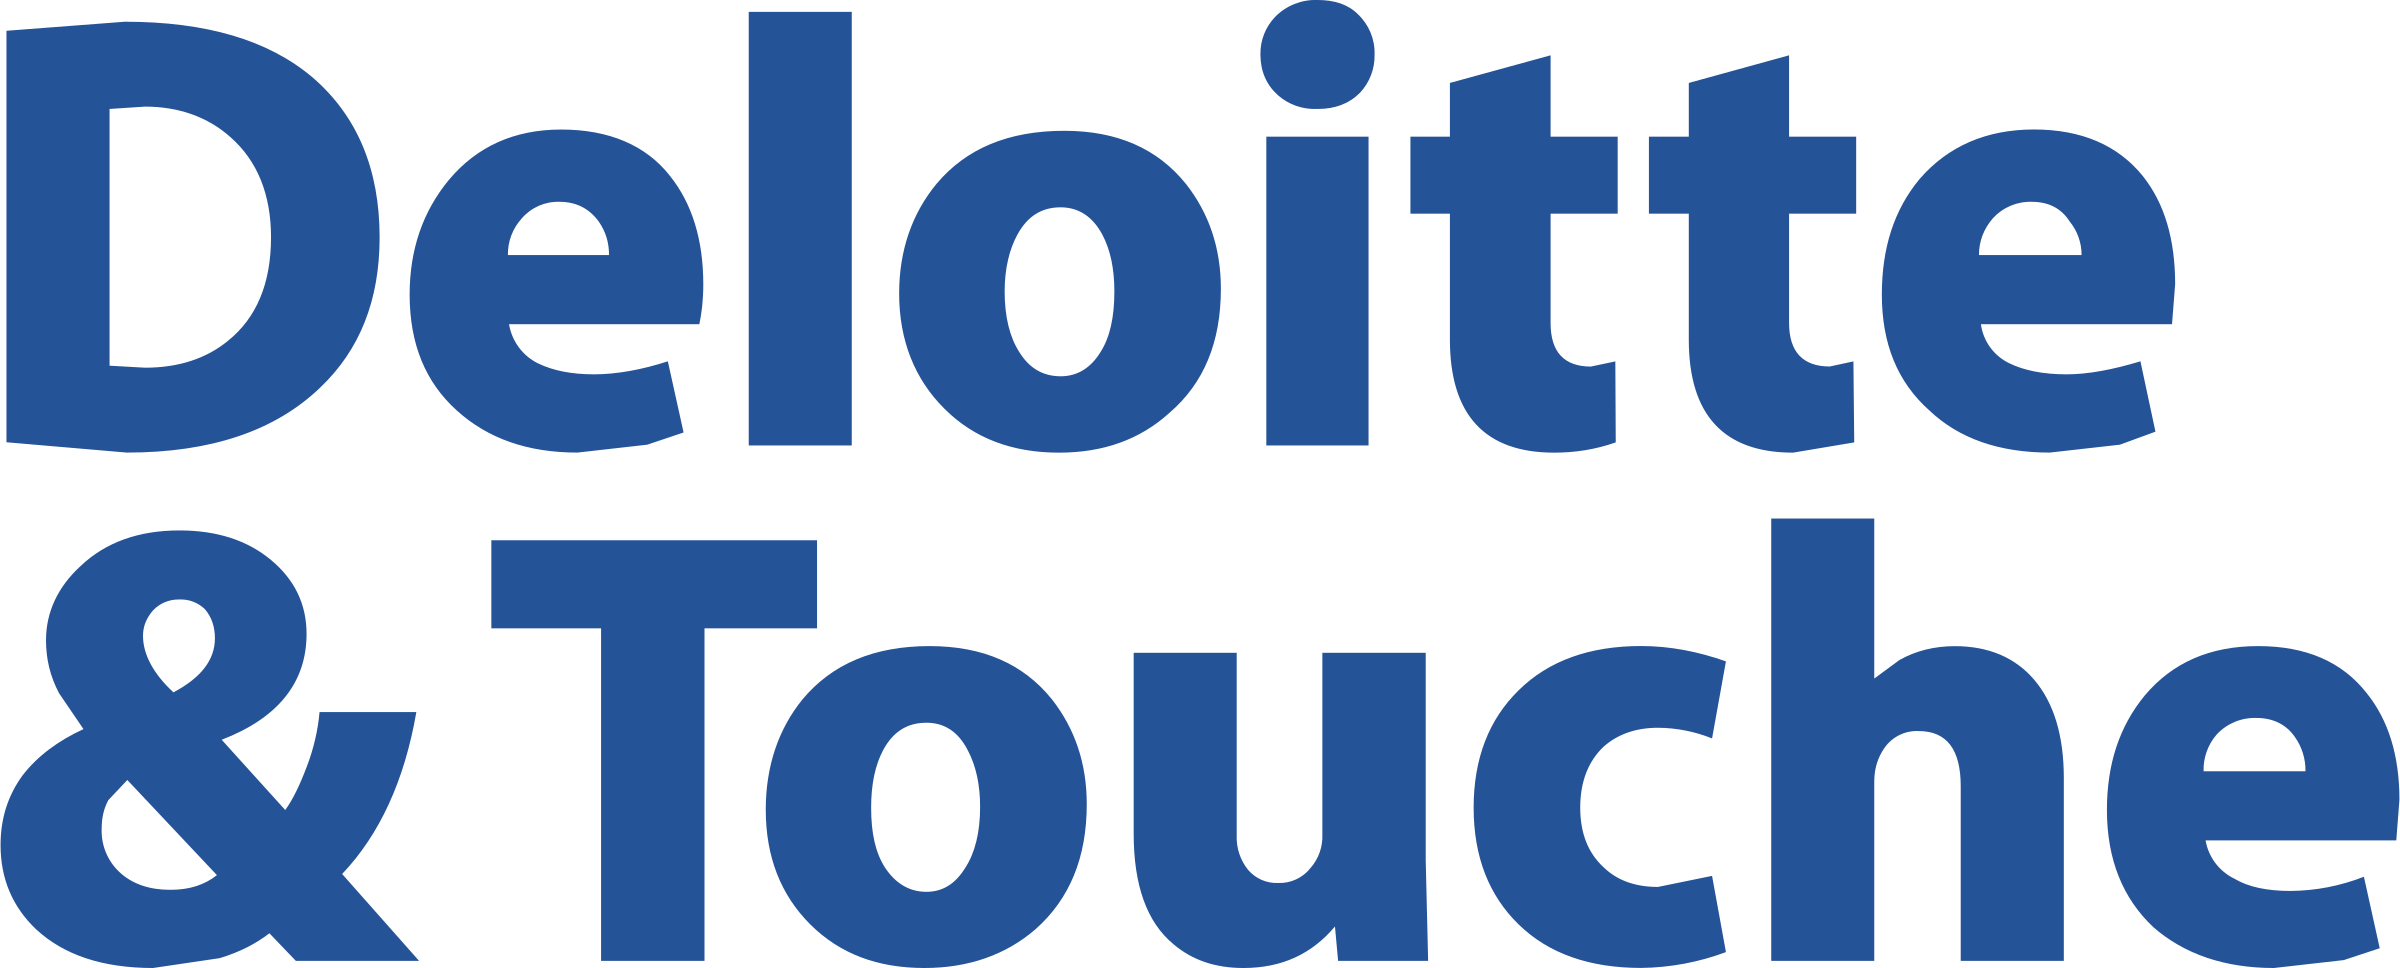 deloitte-touche-1-logo-png-transparent.png